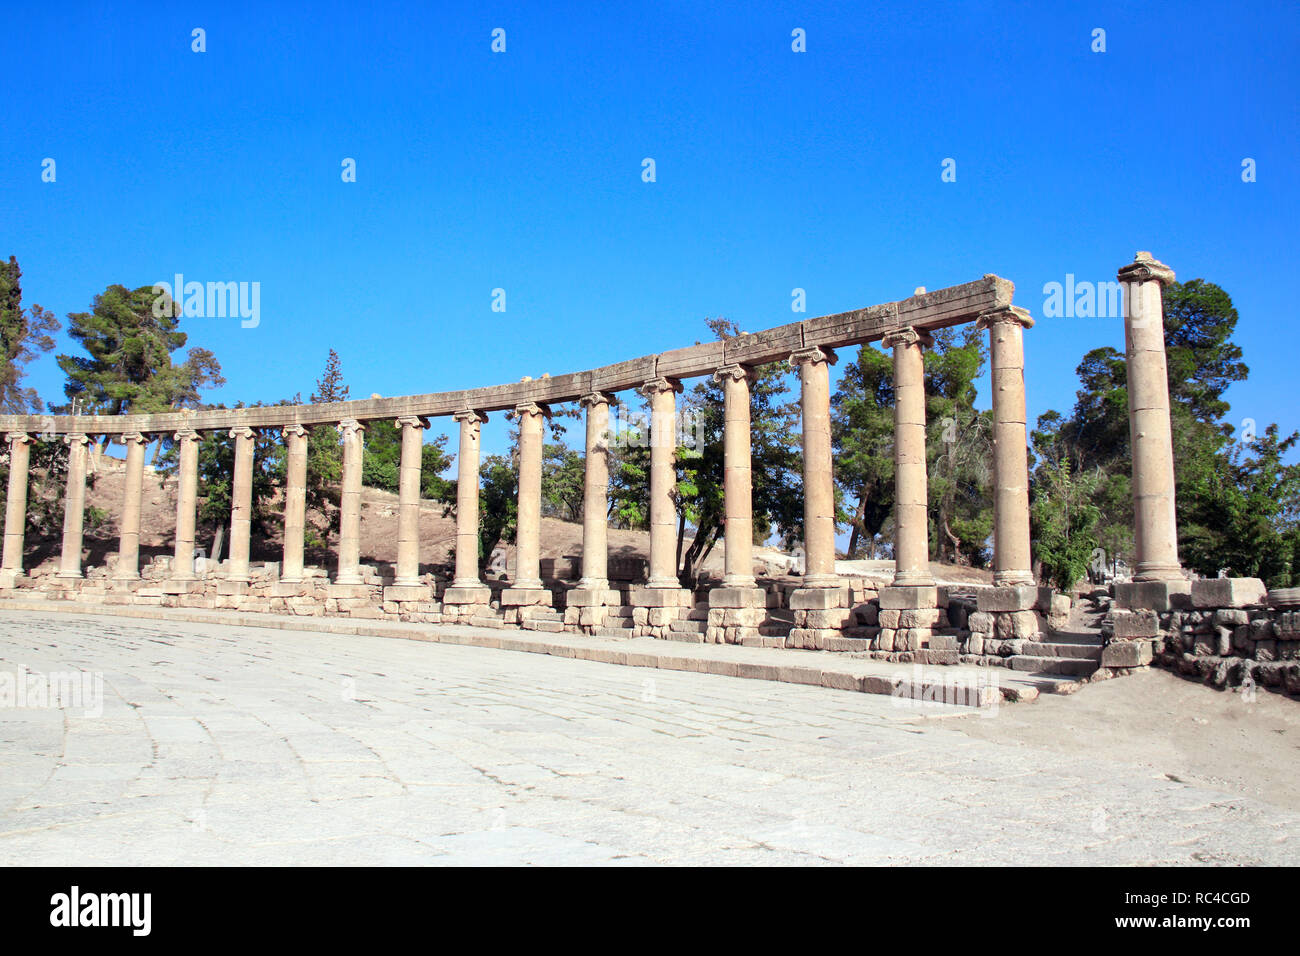 Colonnes ioniques sur Plaza ovale avec de Jerash (Gérasa), ancienne capitale romaine et la plus grande ville du gouvernorat de Jerash, Jordanie, Moyen-Orient. UNESCO World h Banque D'Images